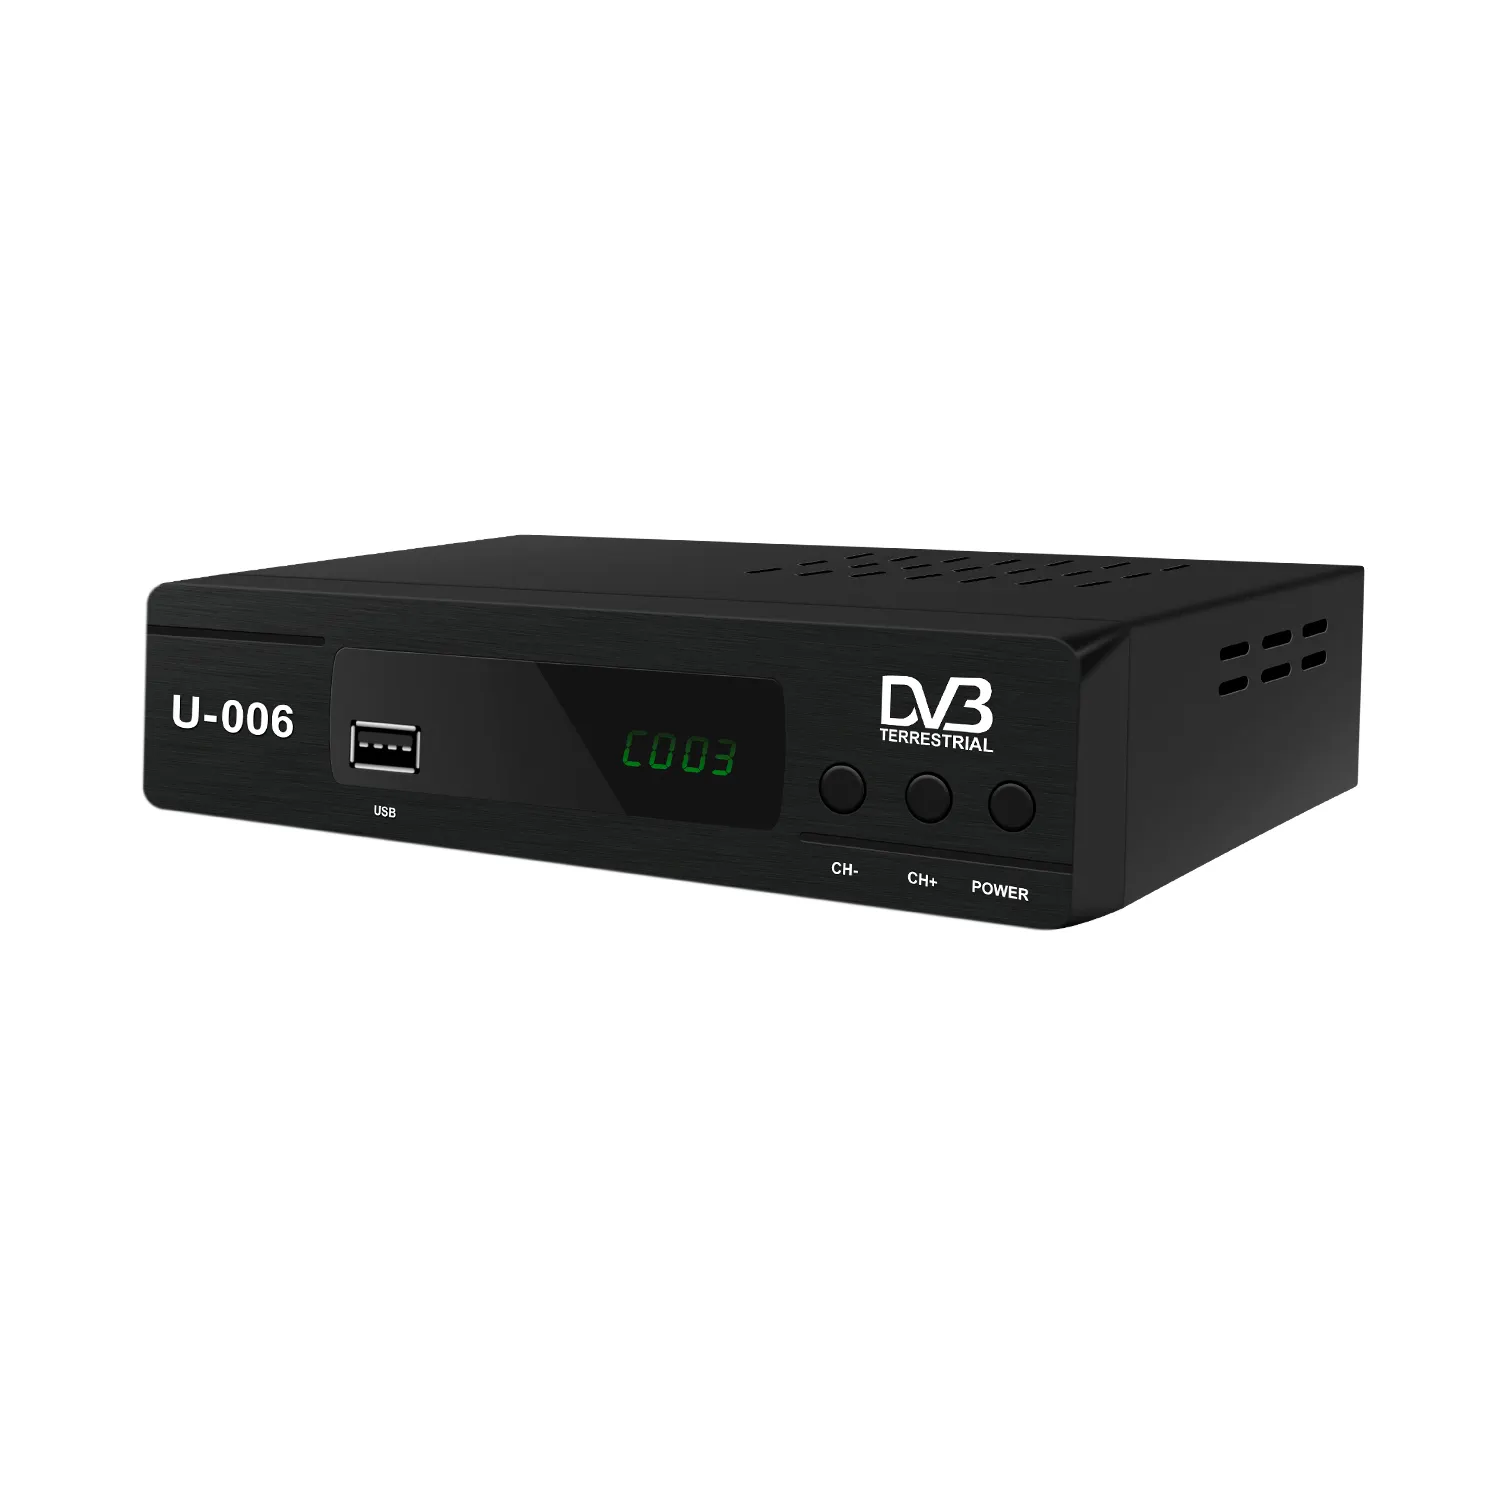 Décodeur de DVB-T2 Full HD Décodeur Récepteur de télévision numérique avec lecteur multimédia Wifi Désodificador DVB T2 Décodeur de télévision